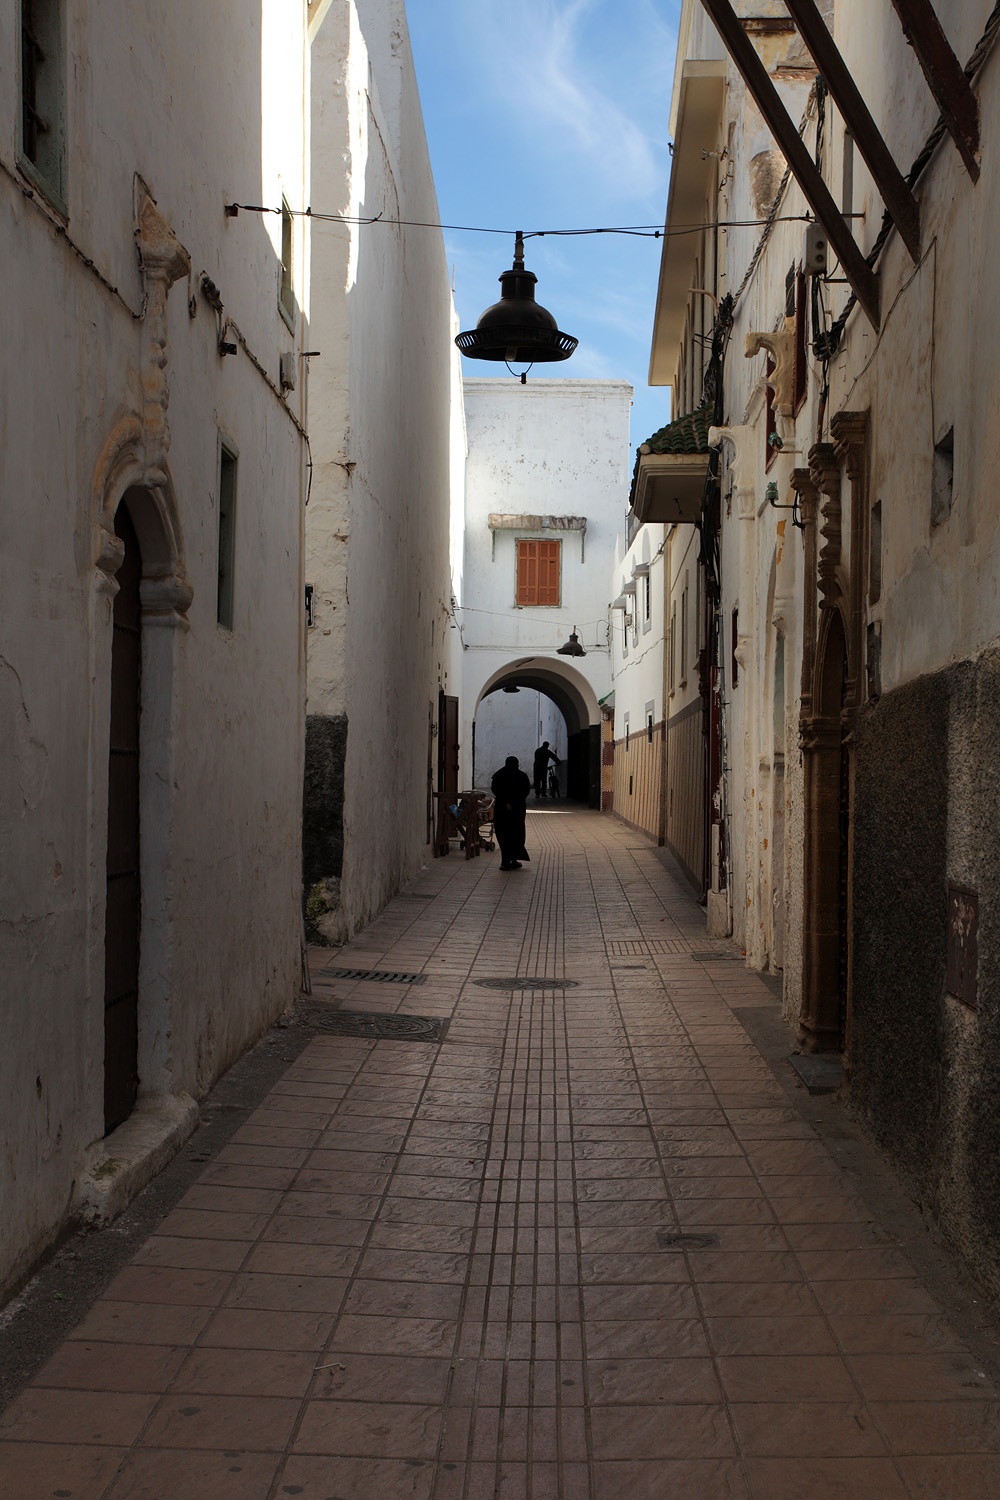 bill-hocker-medina-rabat-morocco-2013